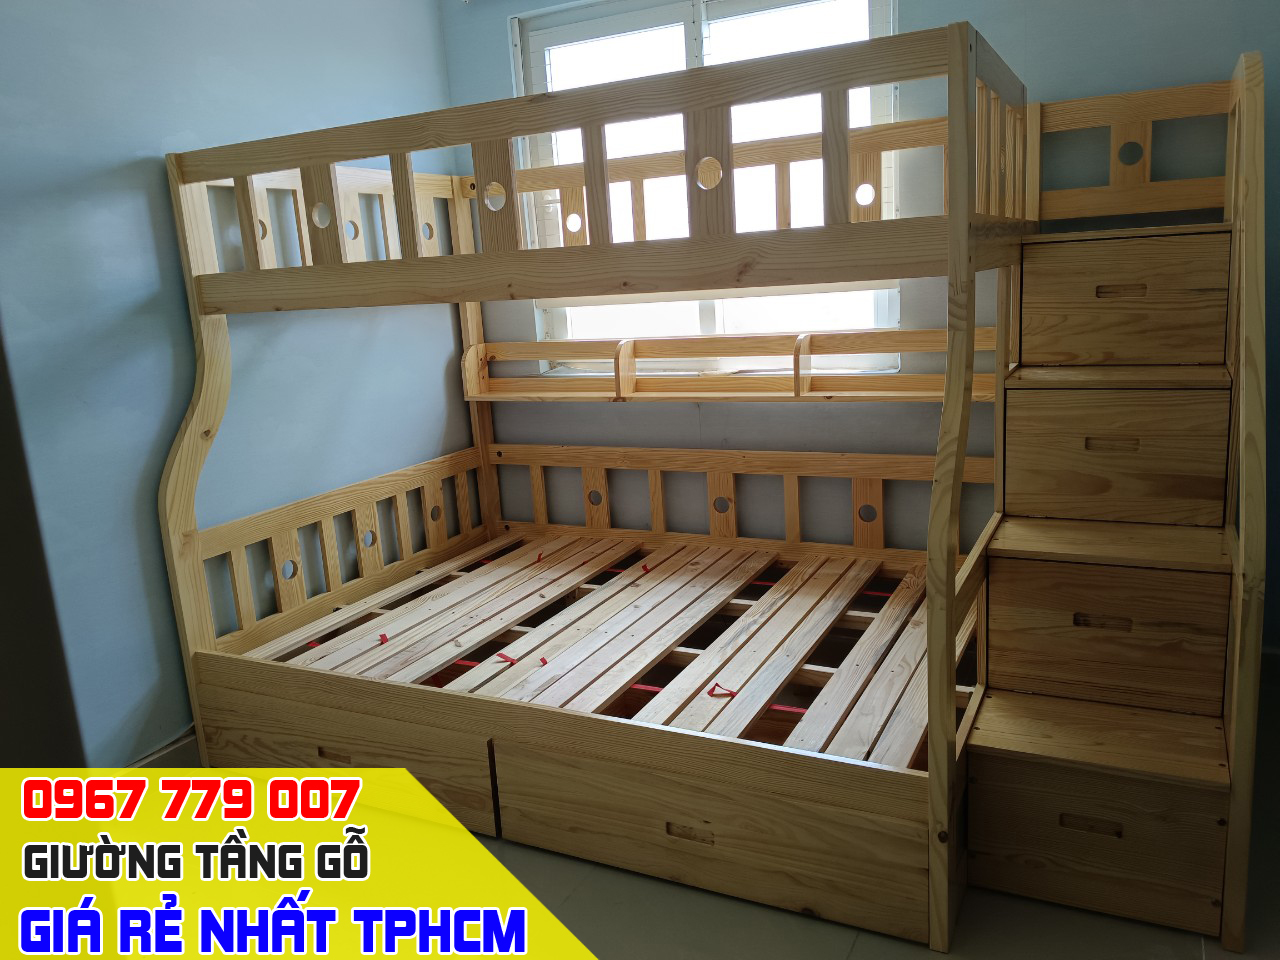 CH bán giường tầng trẻ em giá rẻ uy tín nhất Quận Gò Vấp TPHCM 6